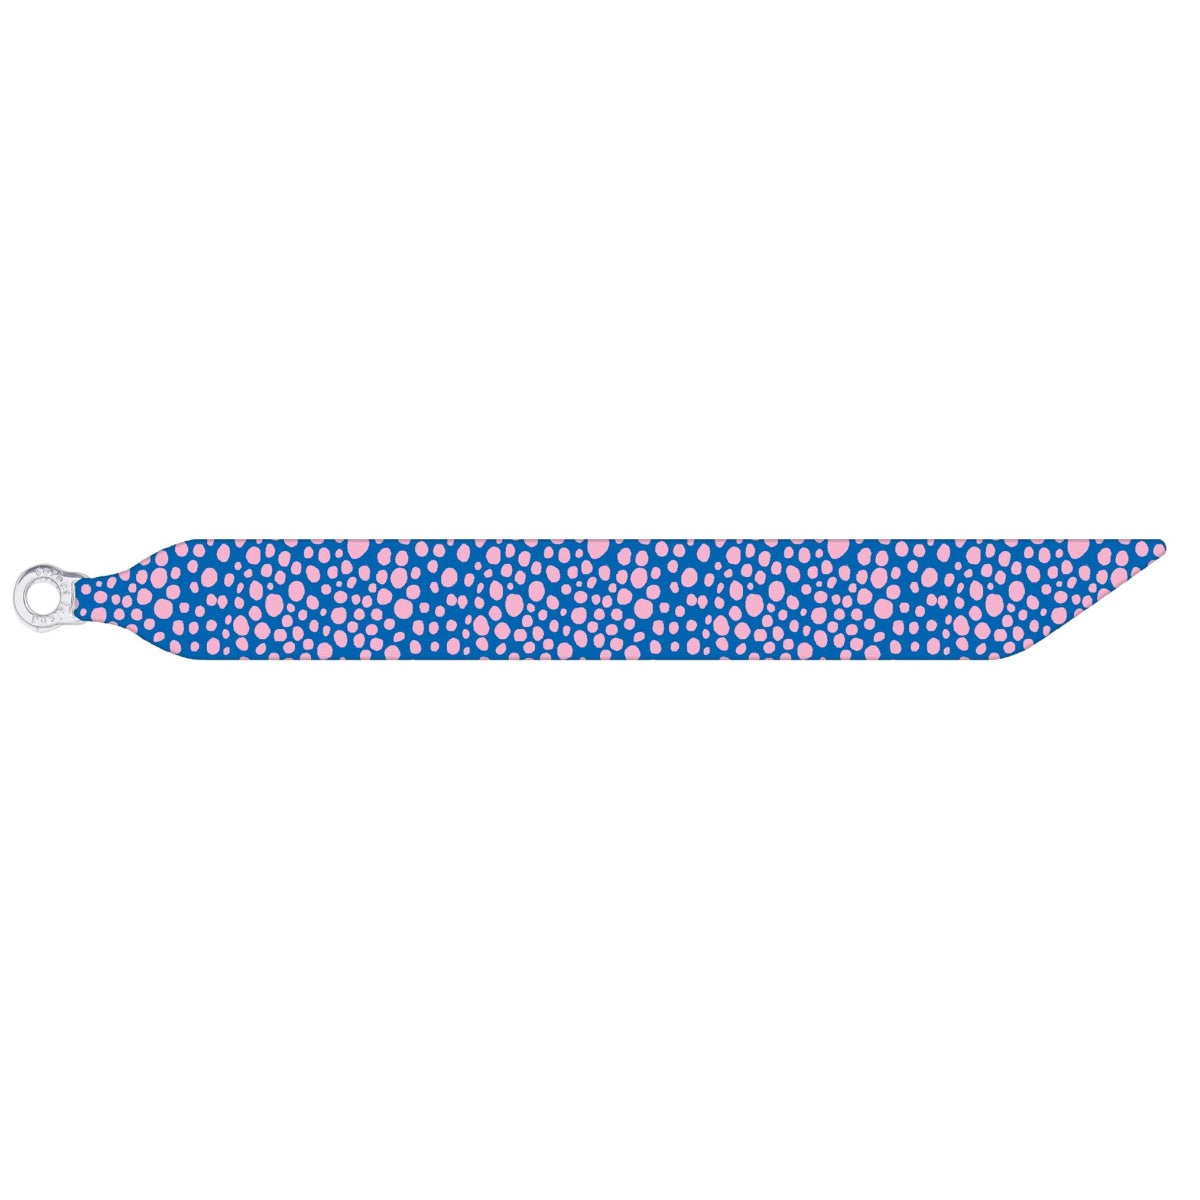 Produktbild: Sorbet Island - Silk Bracelet - Blue Sparkle von sorbet island im Onlineshop von dasMikruli - Dein Shop für Baby Erstausstattung